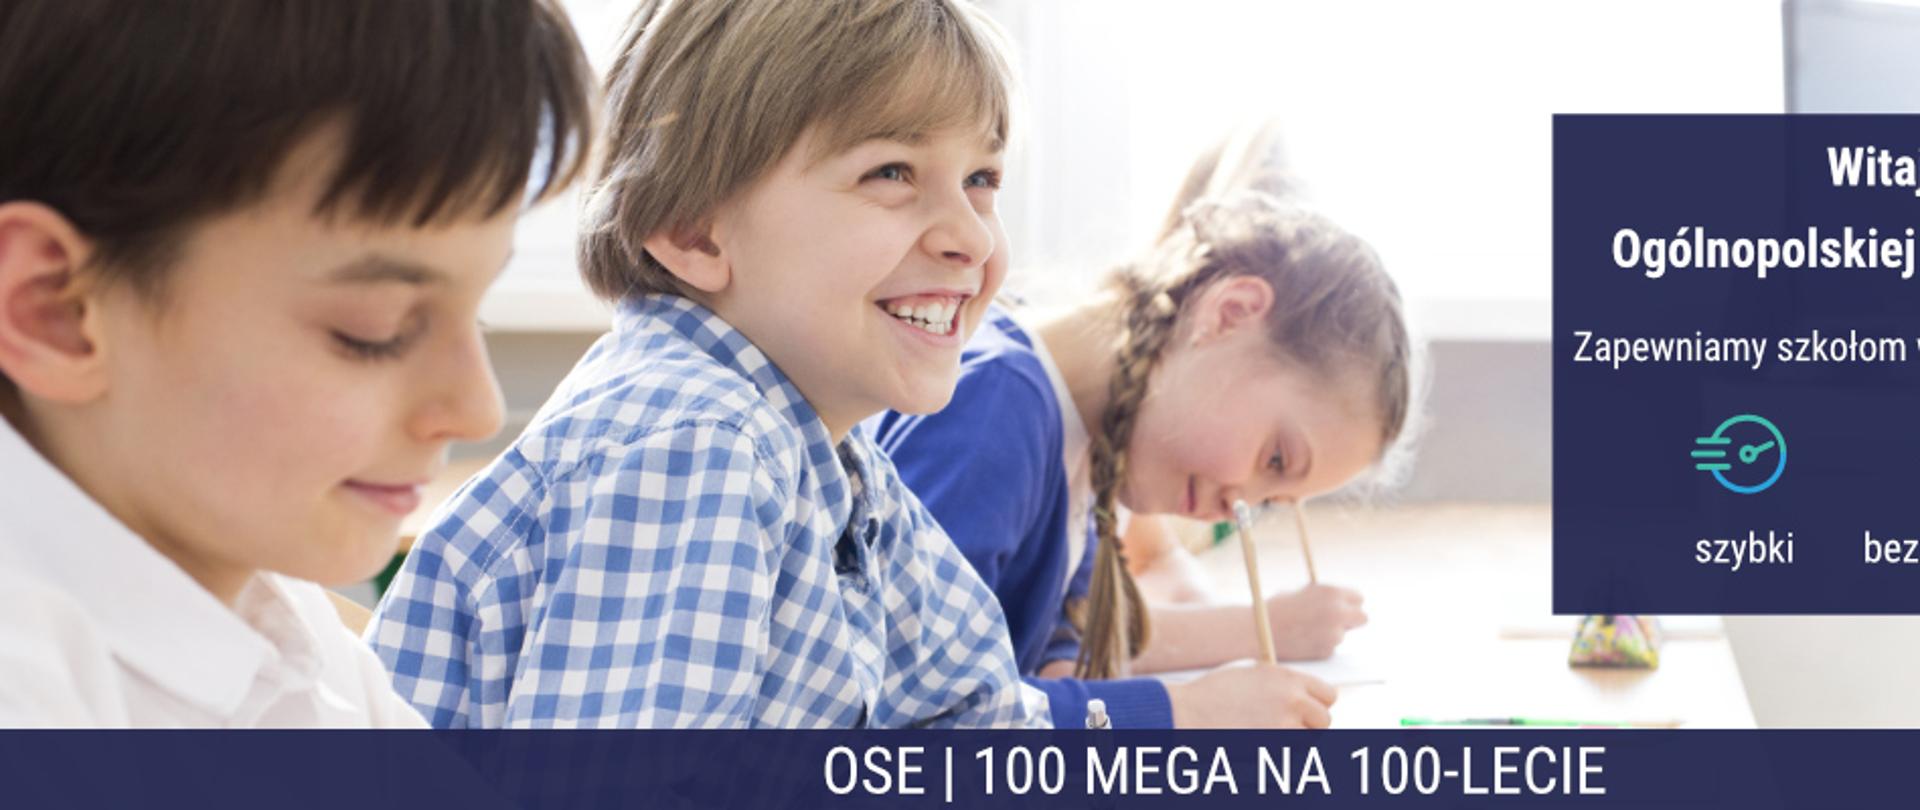 Dzieci uśmiechające się podczas lekcji, siedzące przy biurkach szkolnych.